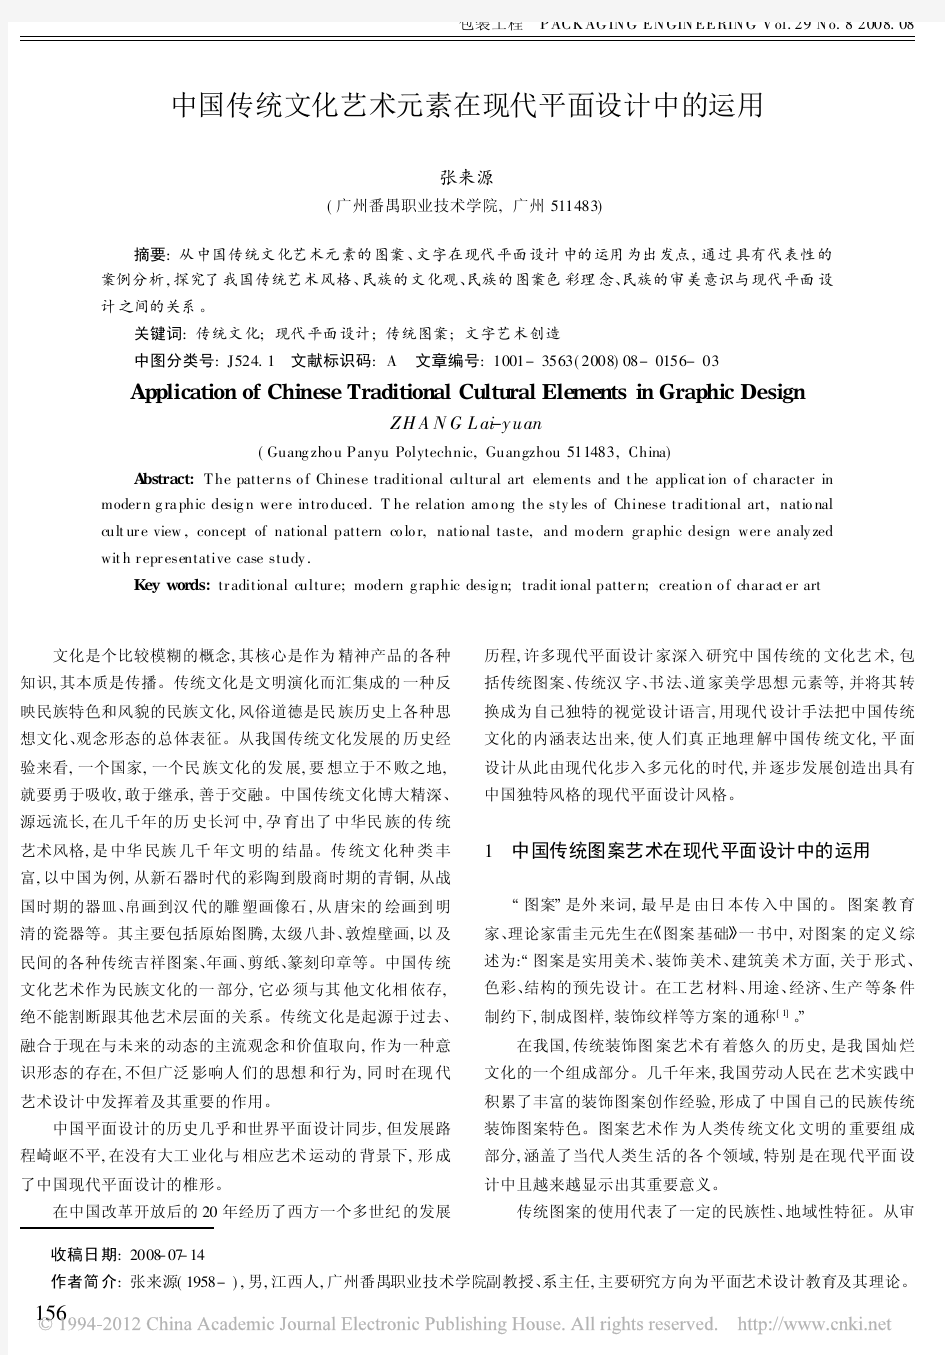 中国传统文化艺术元素在现代平面设计中的运用